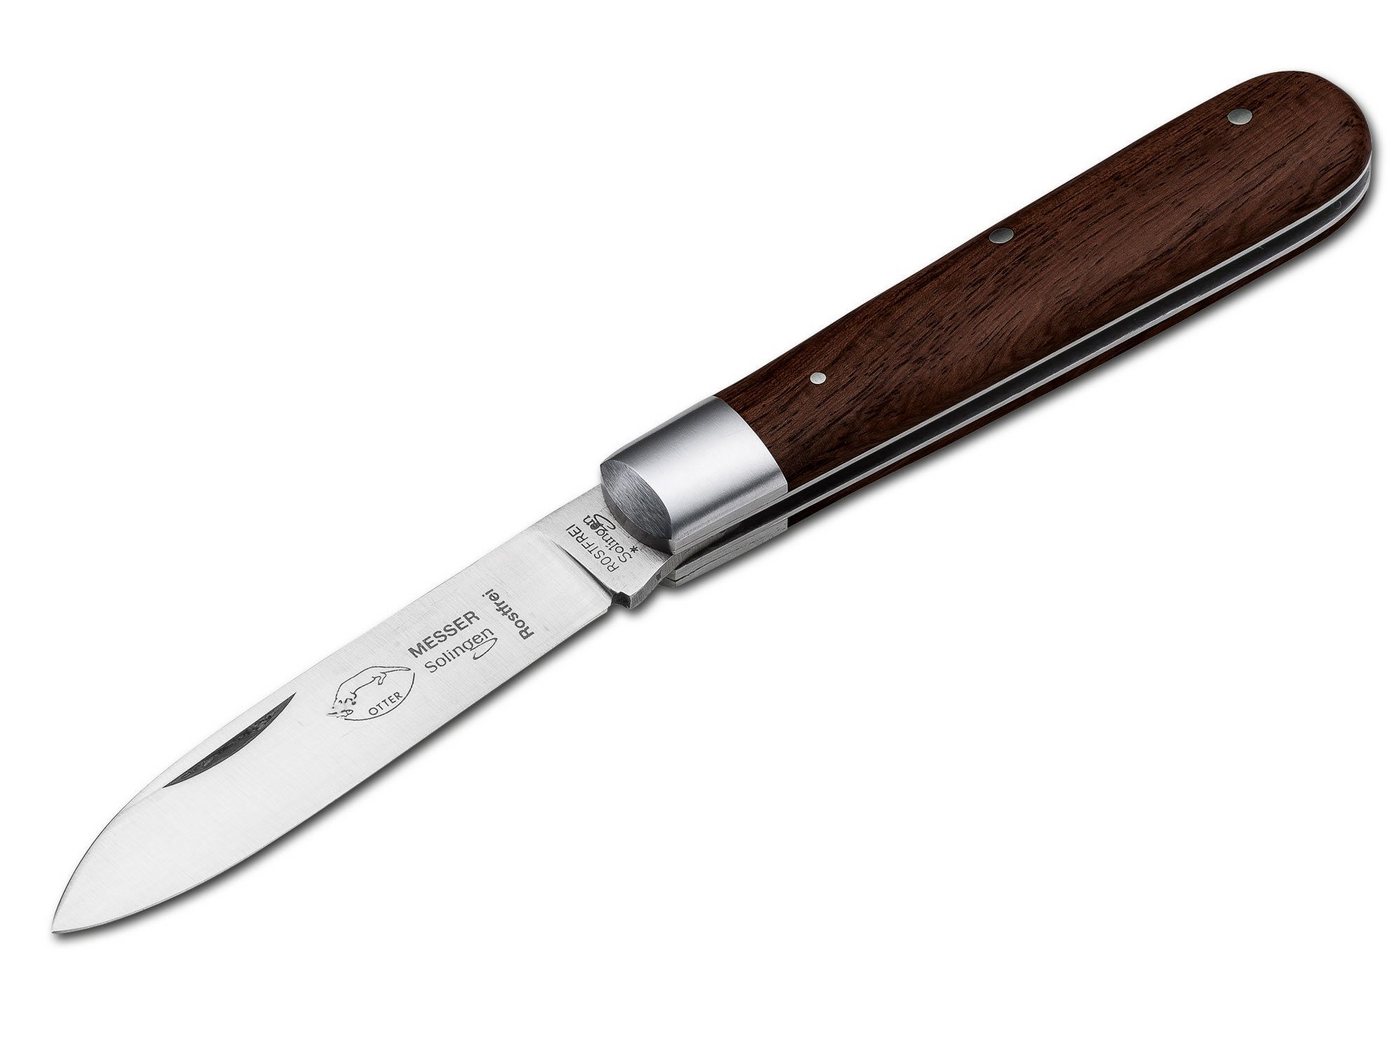 Otter Messer Taschenmesser Otter Klassik-Messer groß, 161R, 4034, Sapeliholz von Otter Messer